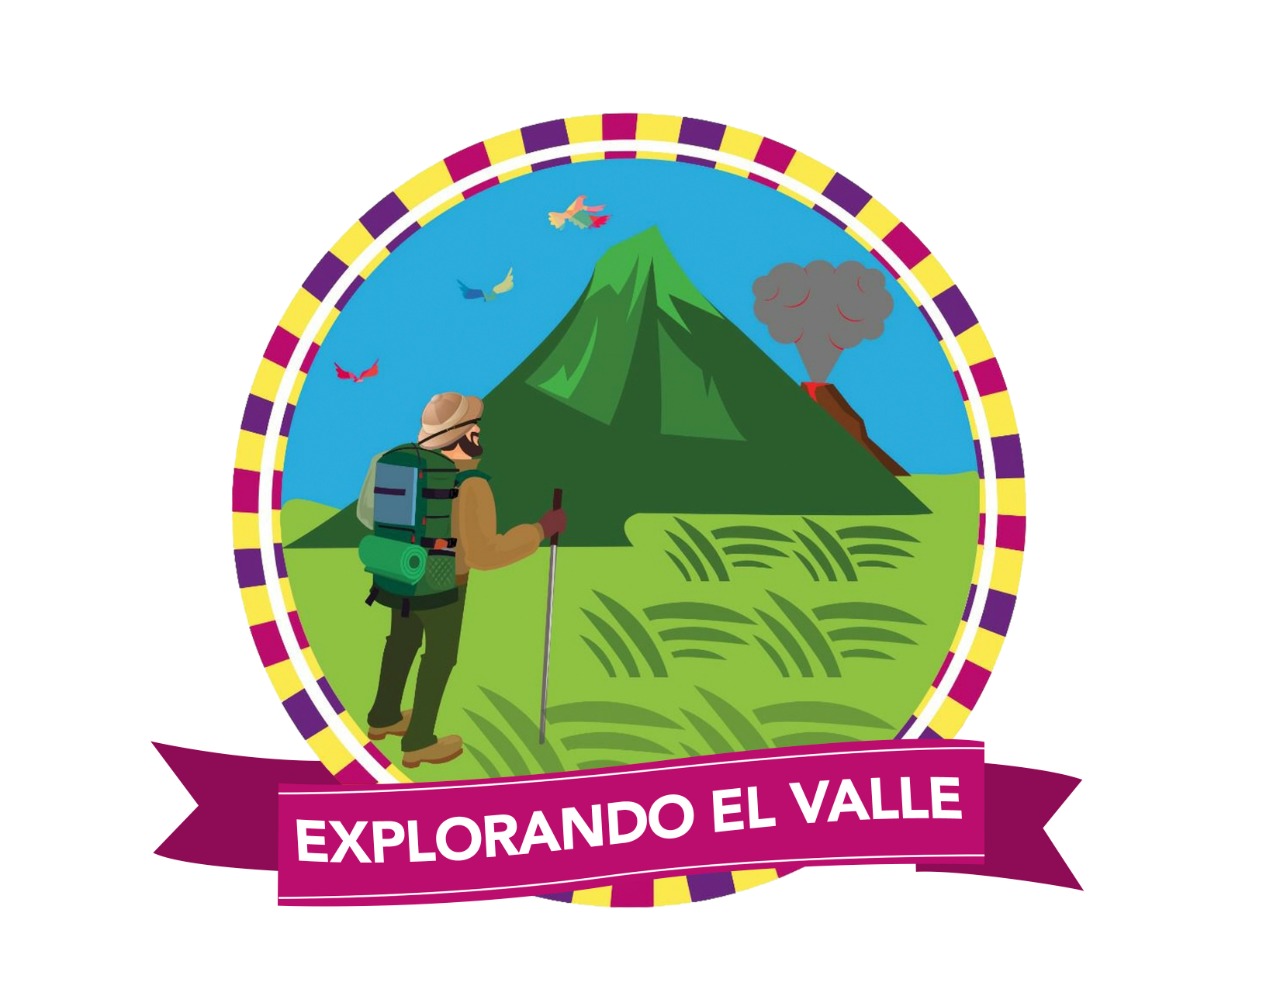 Explorando el valle logo